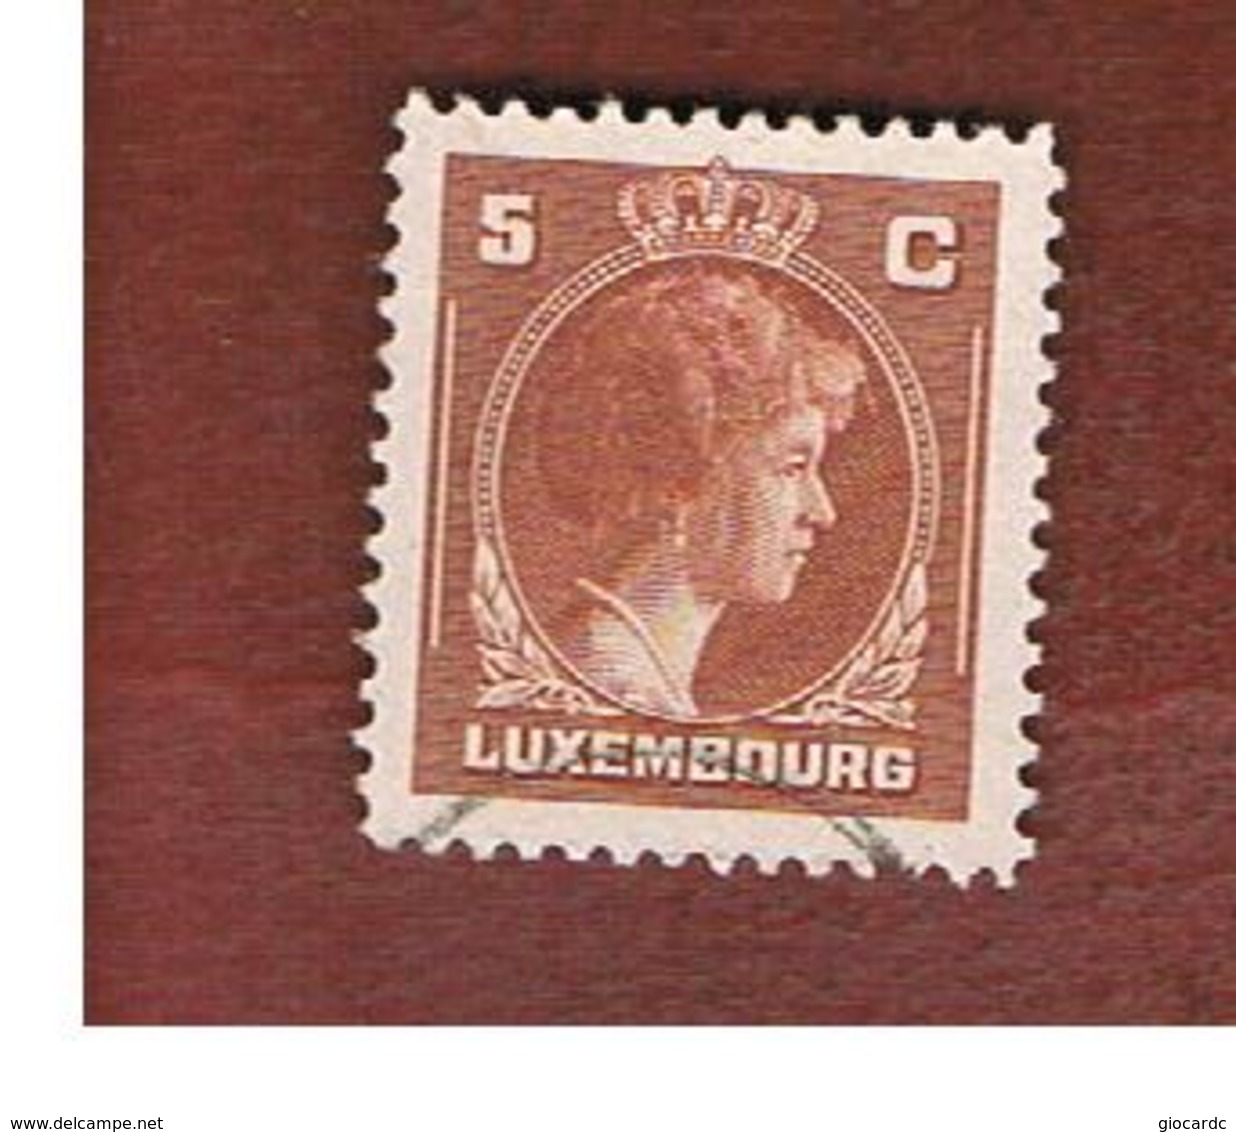 LUSSEMBURGO (LUXEMBOURG)   -   SG  438    -   1944 GRAND DUCHESS  CHARLOTTE  5   -   USED - 1944 Charlotte Di Profilo Destro